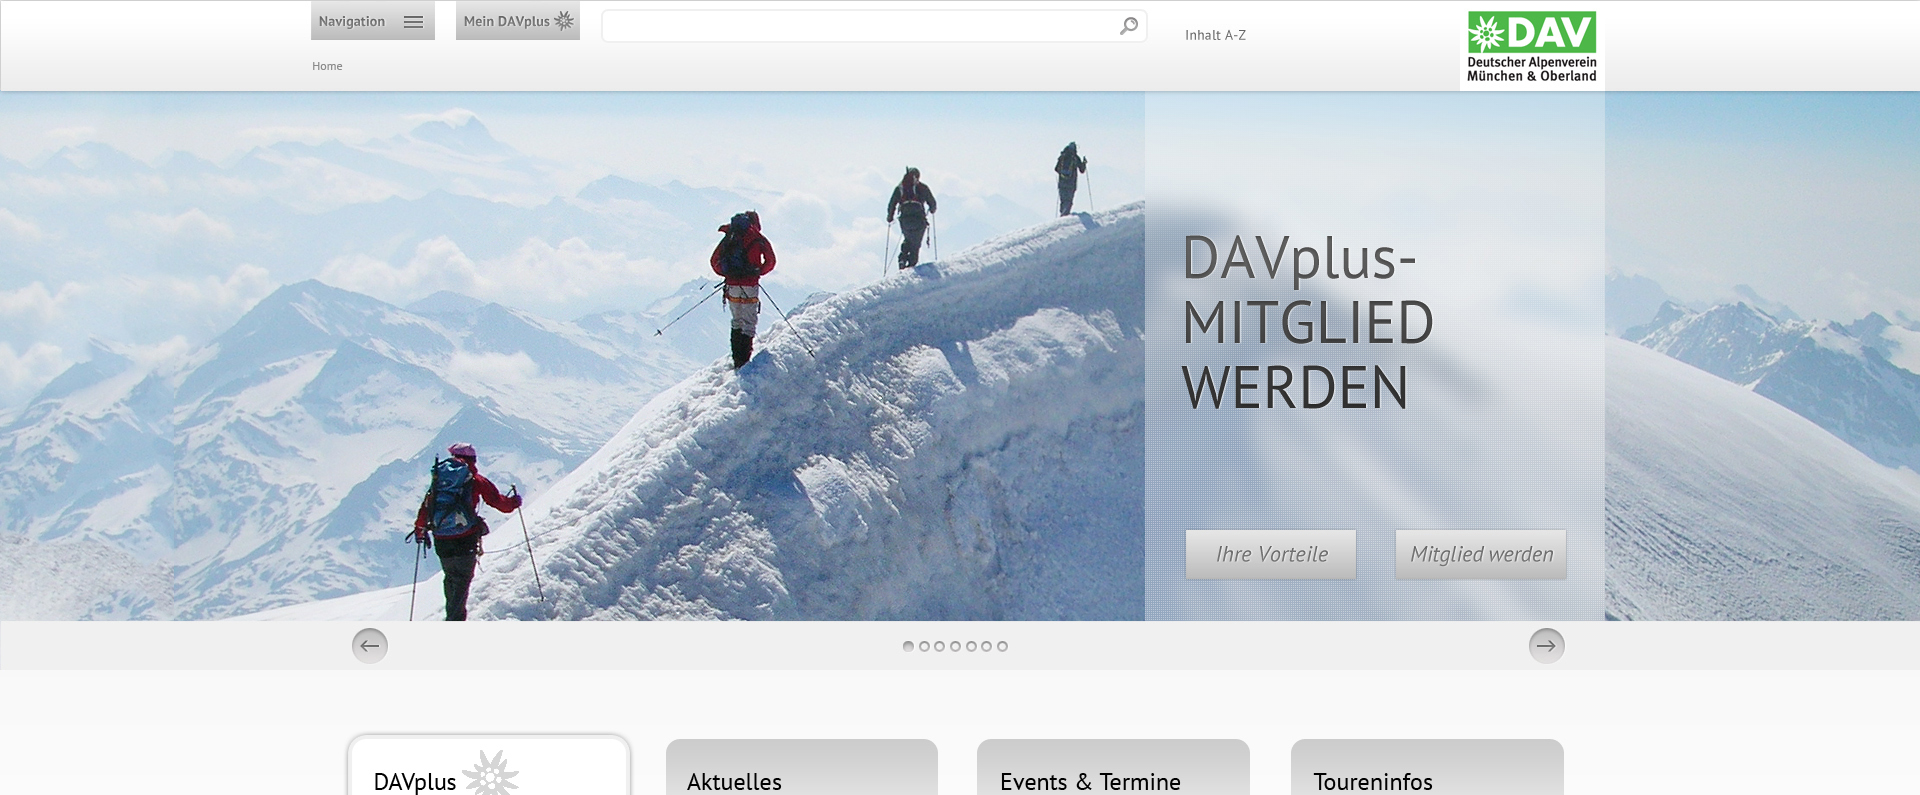 Ausschnitt eines Screenshots der Website www.davplus.de mit einem Header-Bild über die ganze Breite, auf dem Bergsteiger auf einem verschneiten Gipfelrat gehen. Das Foto wirbt für eine Alpenvereins-Migliedschaft.